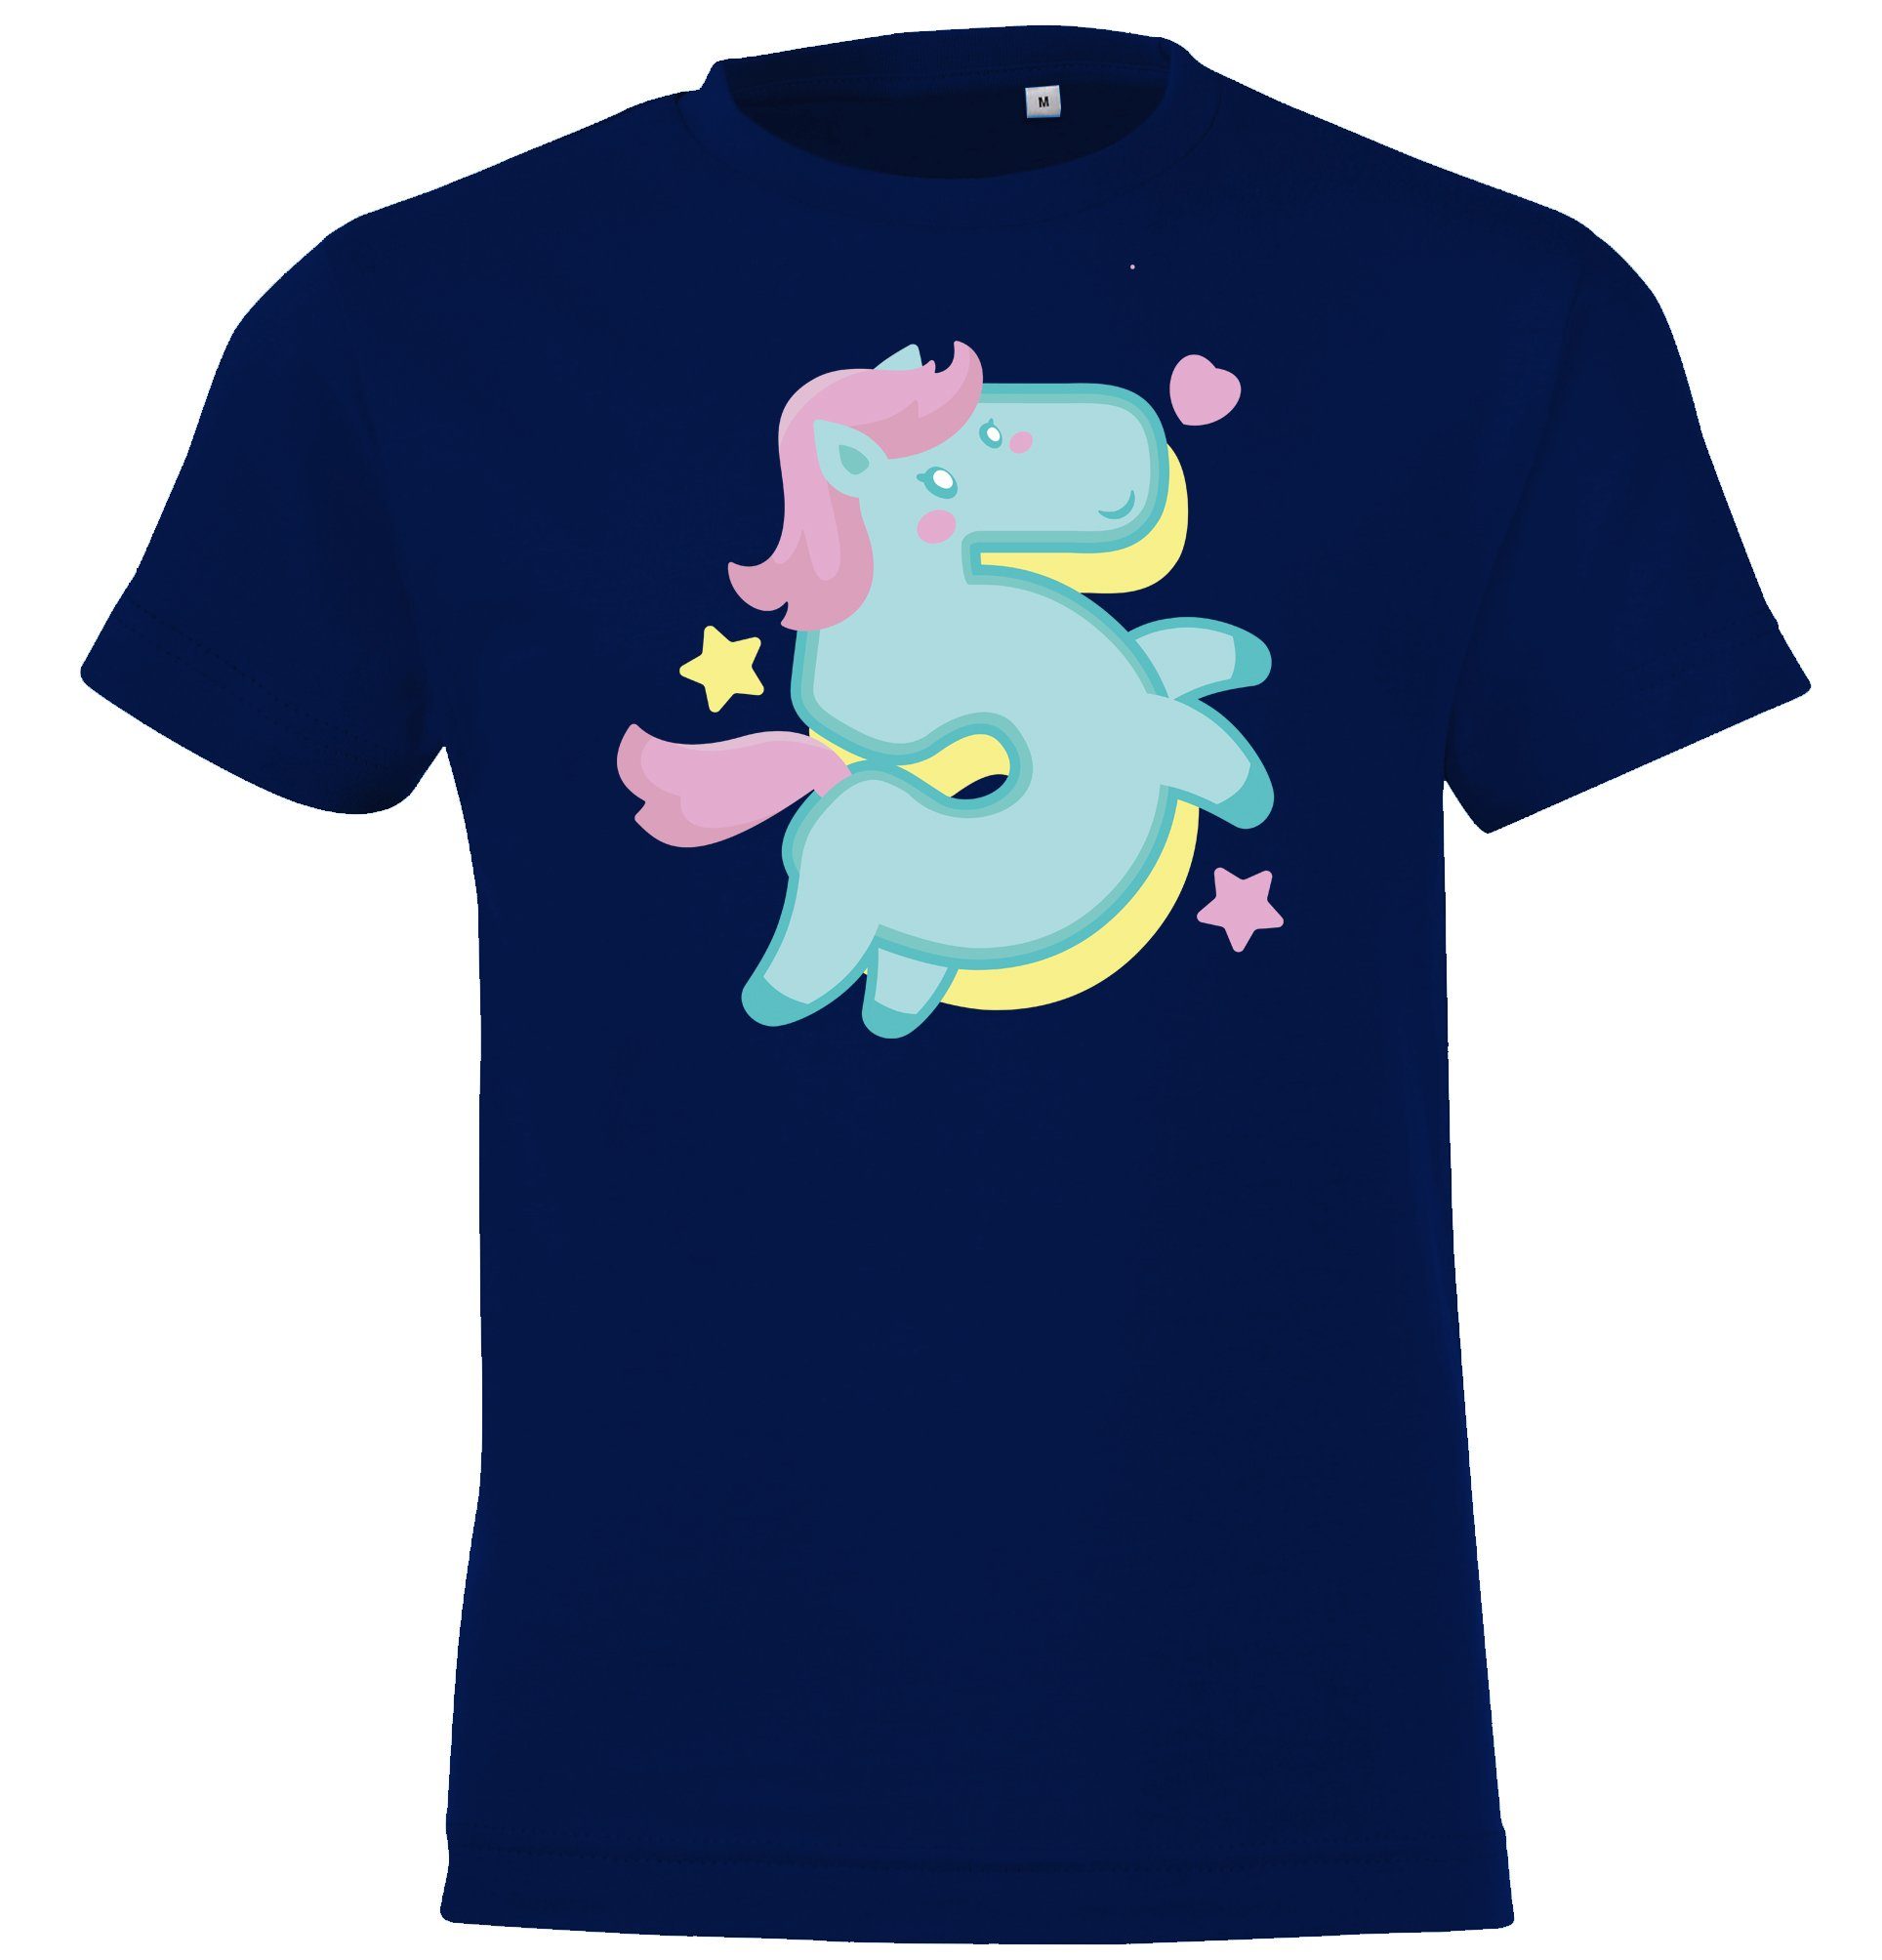 Youth Designz T-Shirt 5 Jahre Alt Geburtstags T-Shirt für Mädchen mit süßem Einhorn Frontprint Navyblau